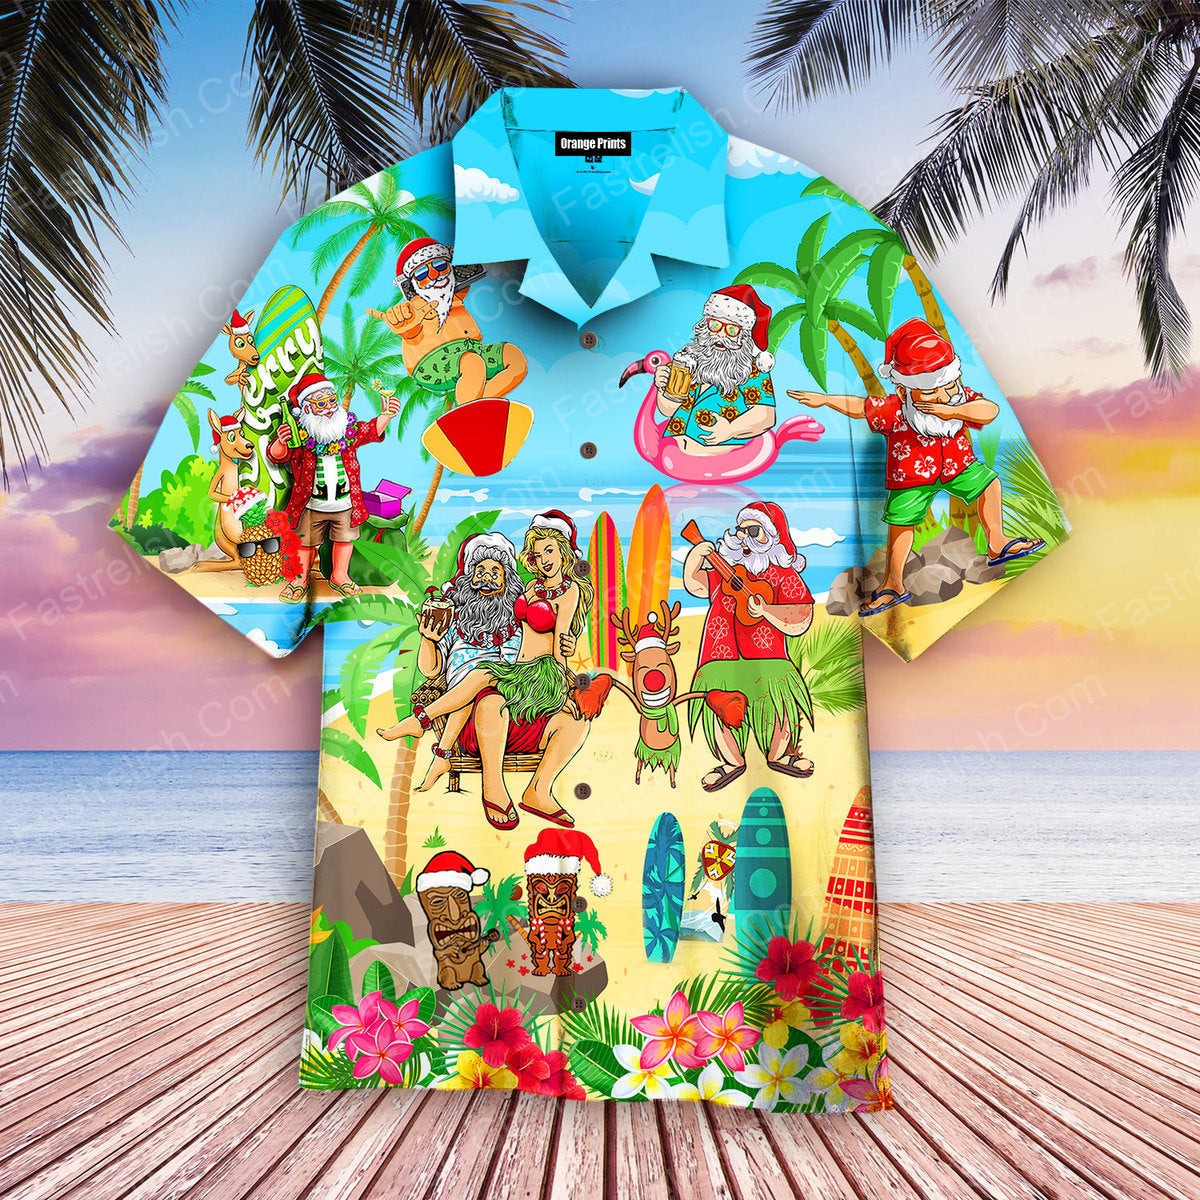 Christmas Mele Kalikimaka From Hawaii Hawaiian Shirts WT9056